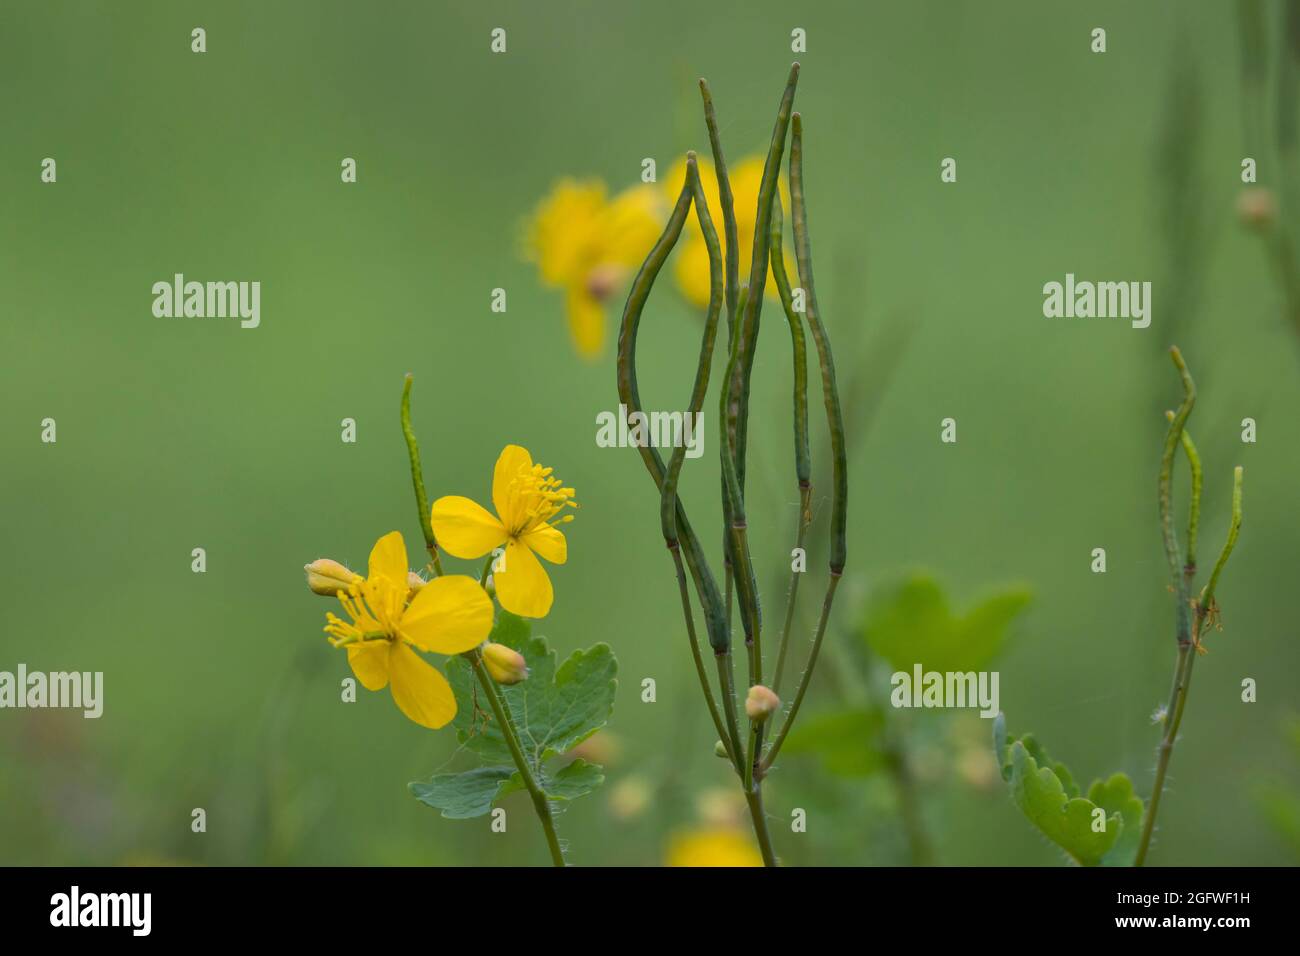 greater celandine (Chelidonium majus), flowers and fruits, Germany Stock Photo